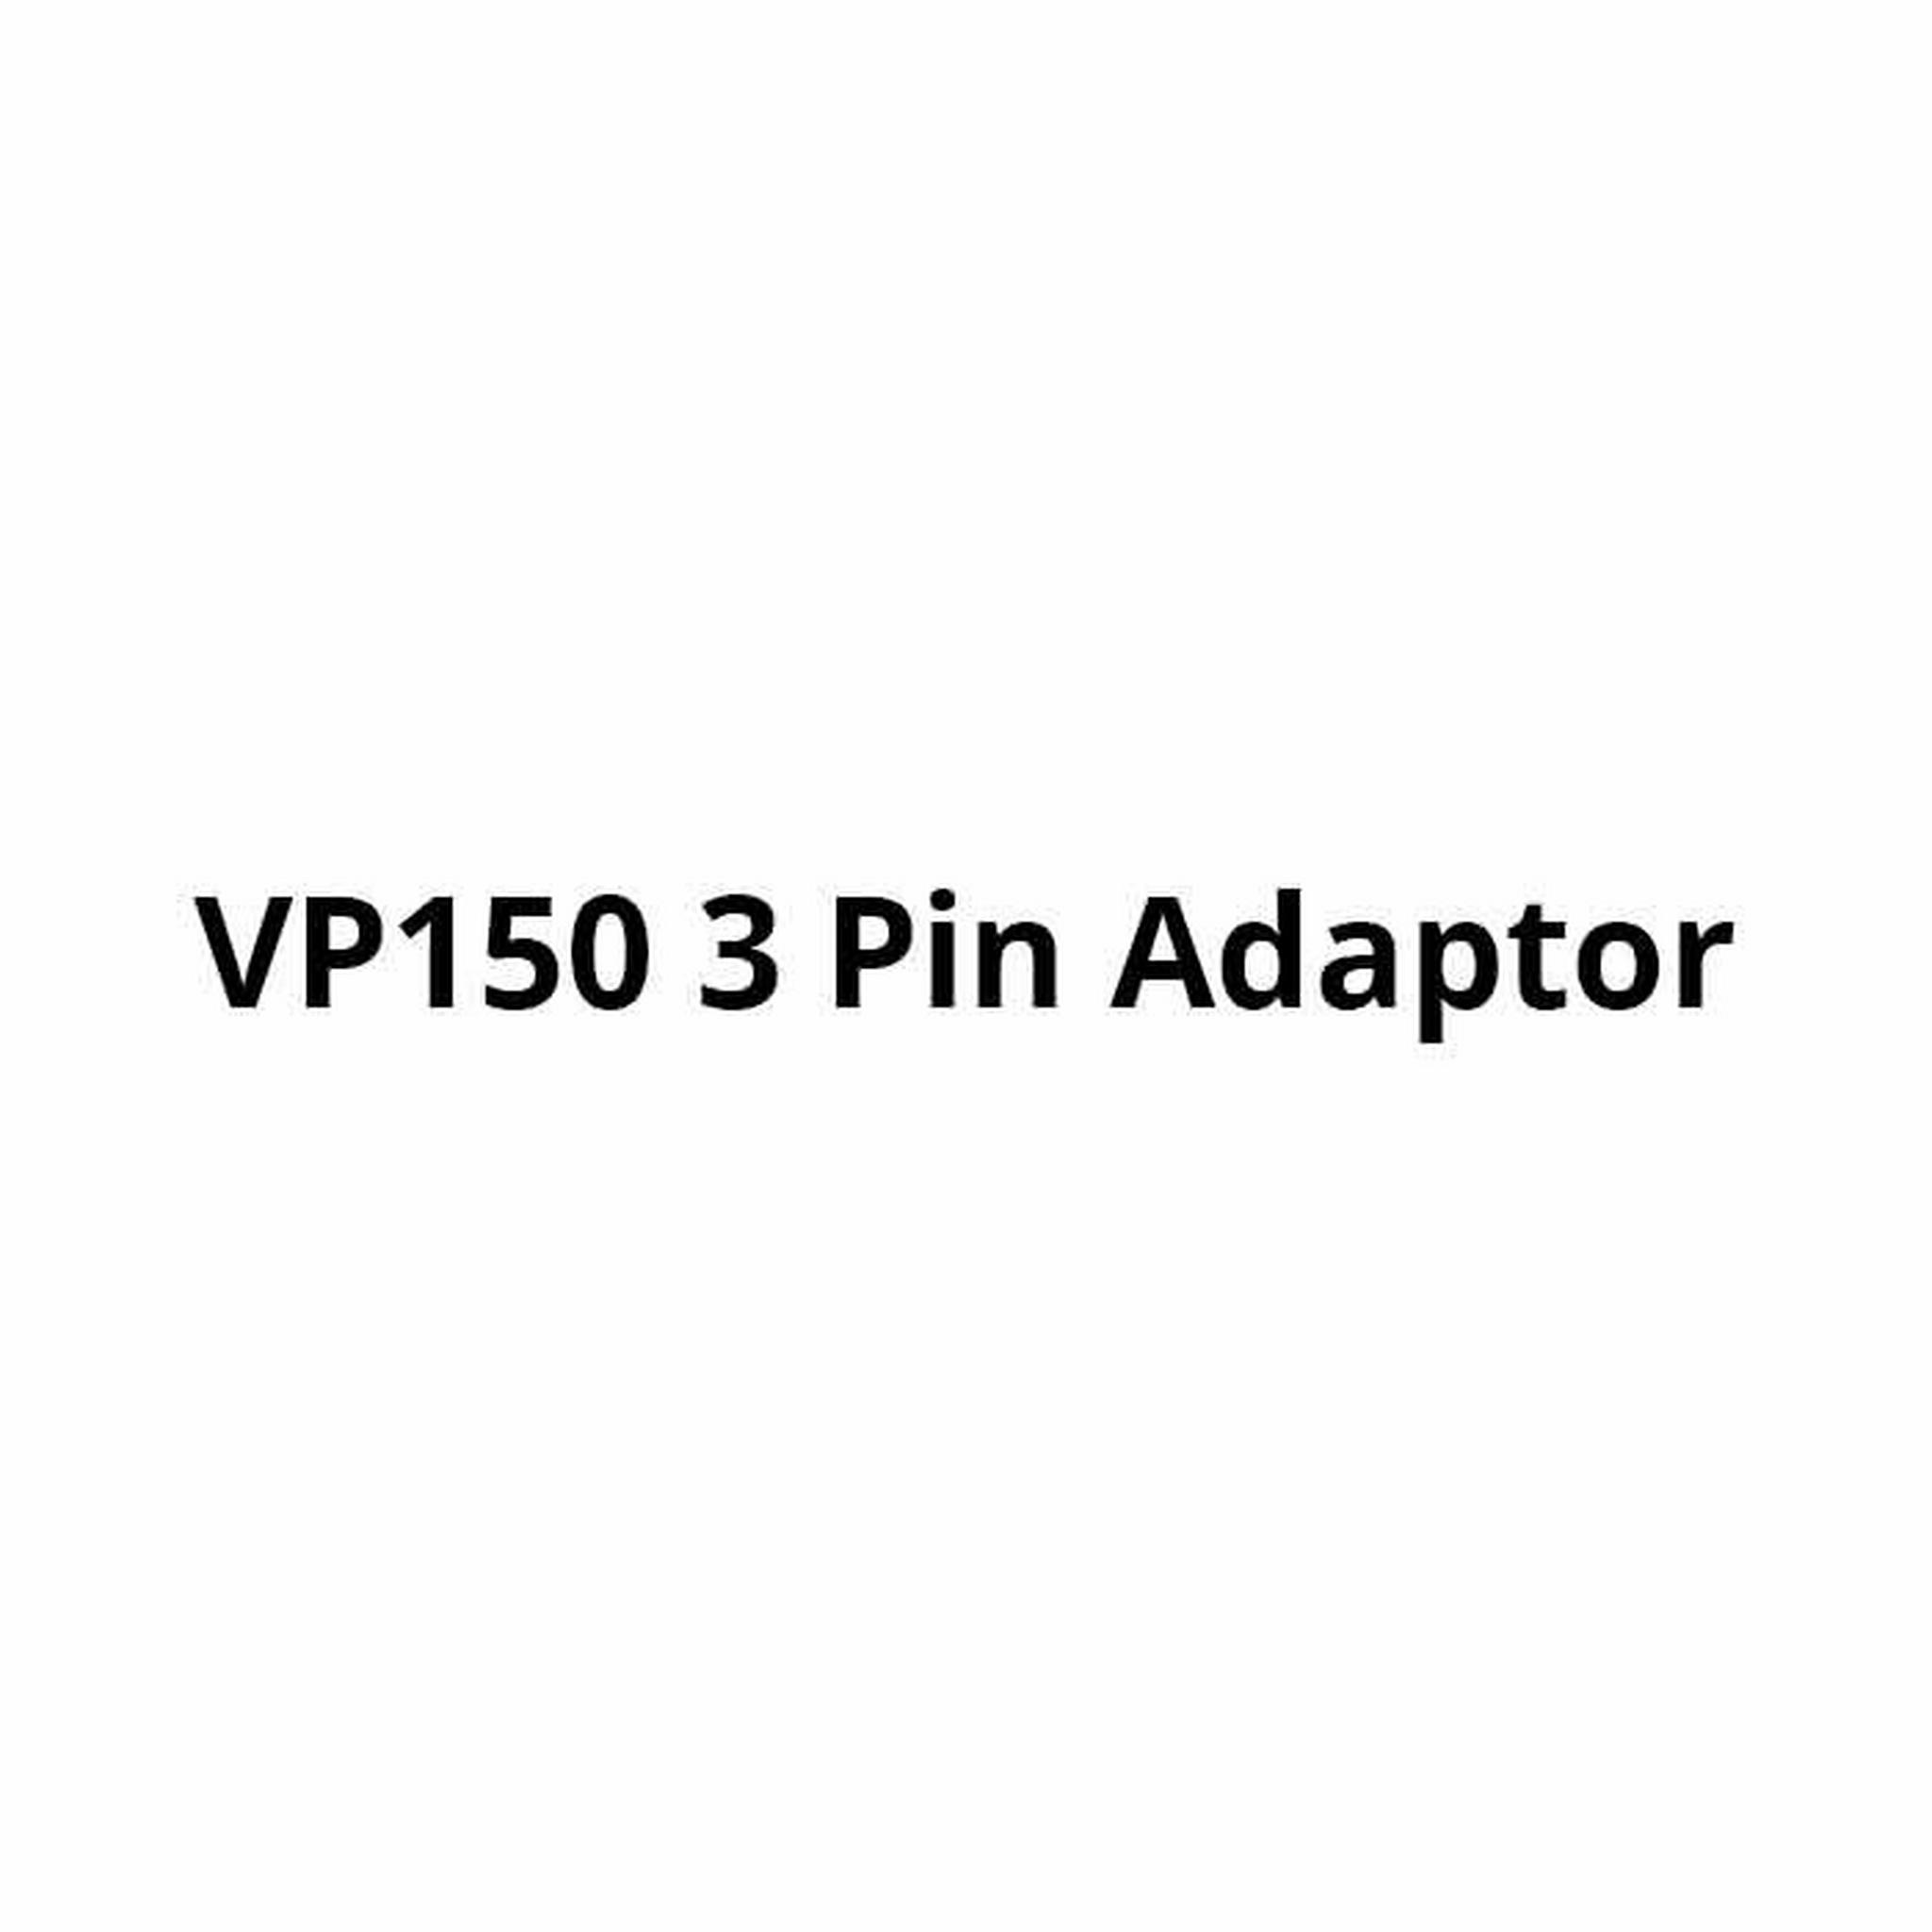 VP150 3 Pin Adaptor